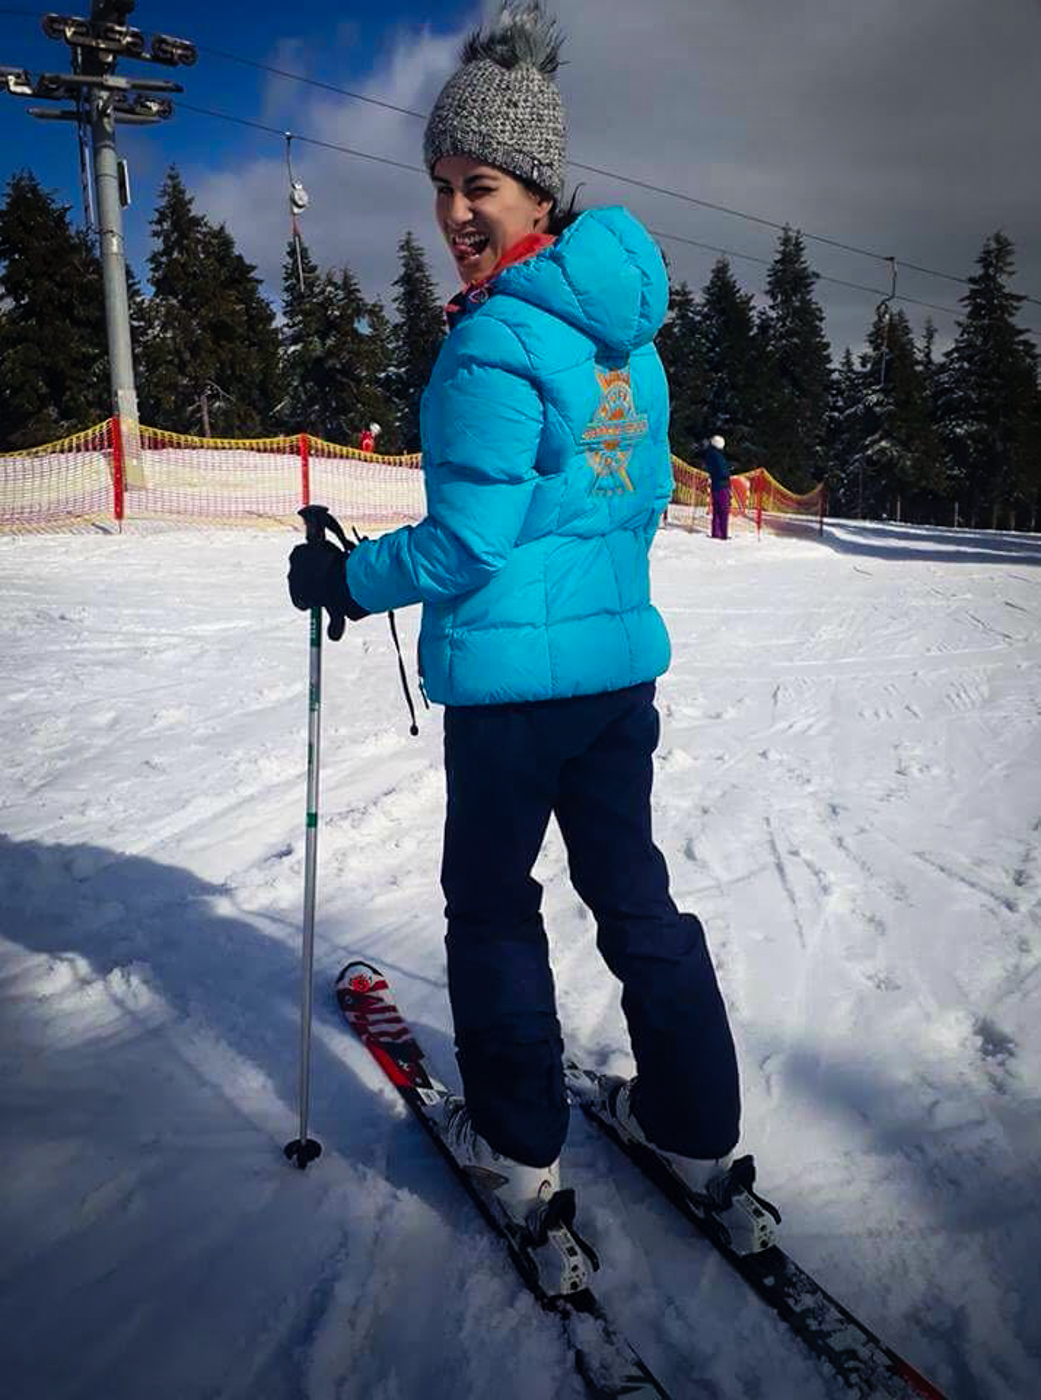 Fernanda esquiando perto de Praga no Cerna Hora, maior estação de esqui da República Tcheca